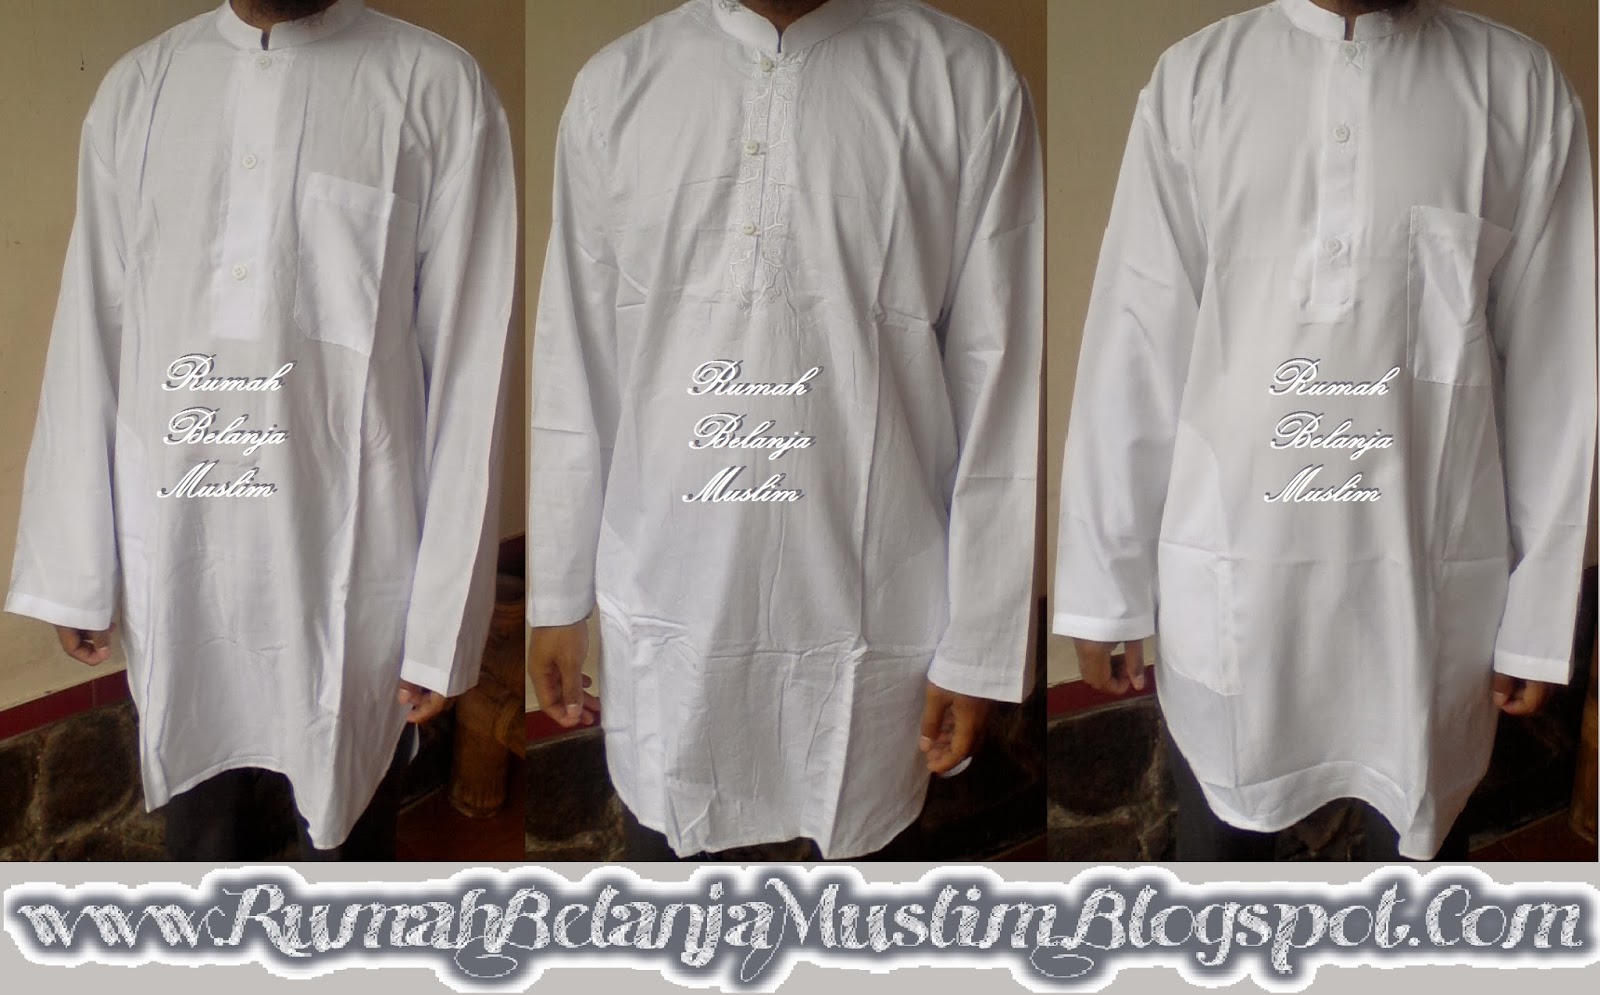  baju putih jual baju koko pakistan putih 28 images jual 